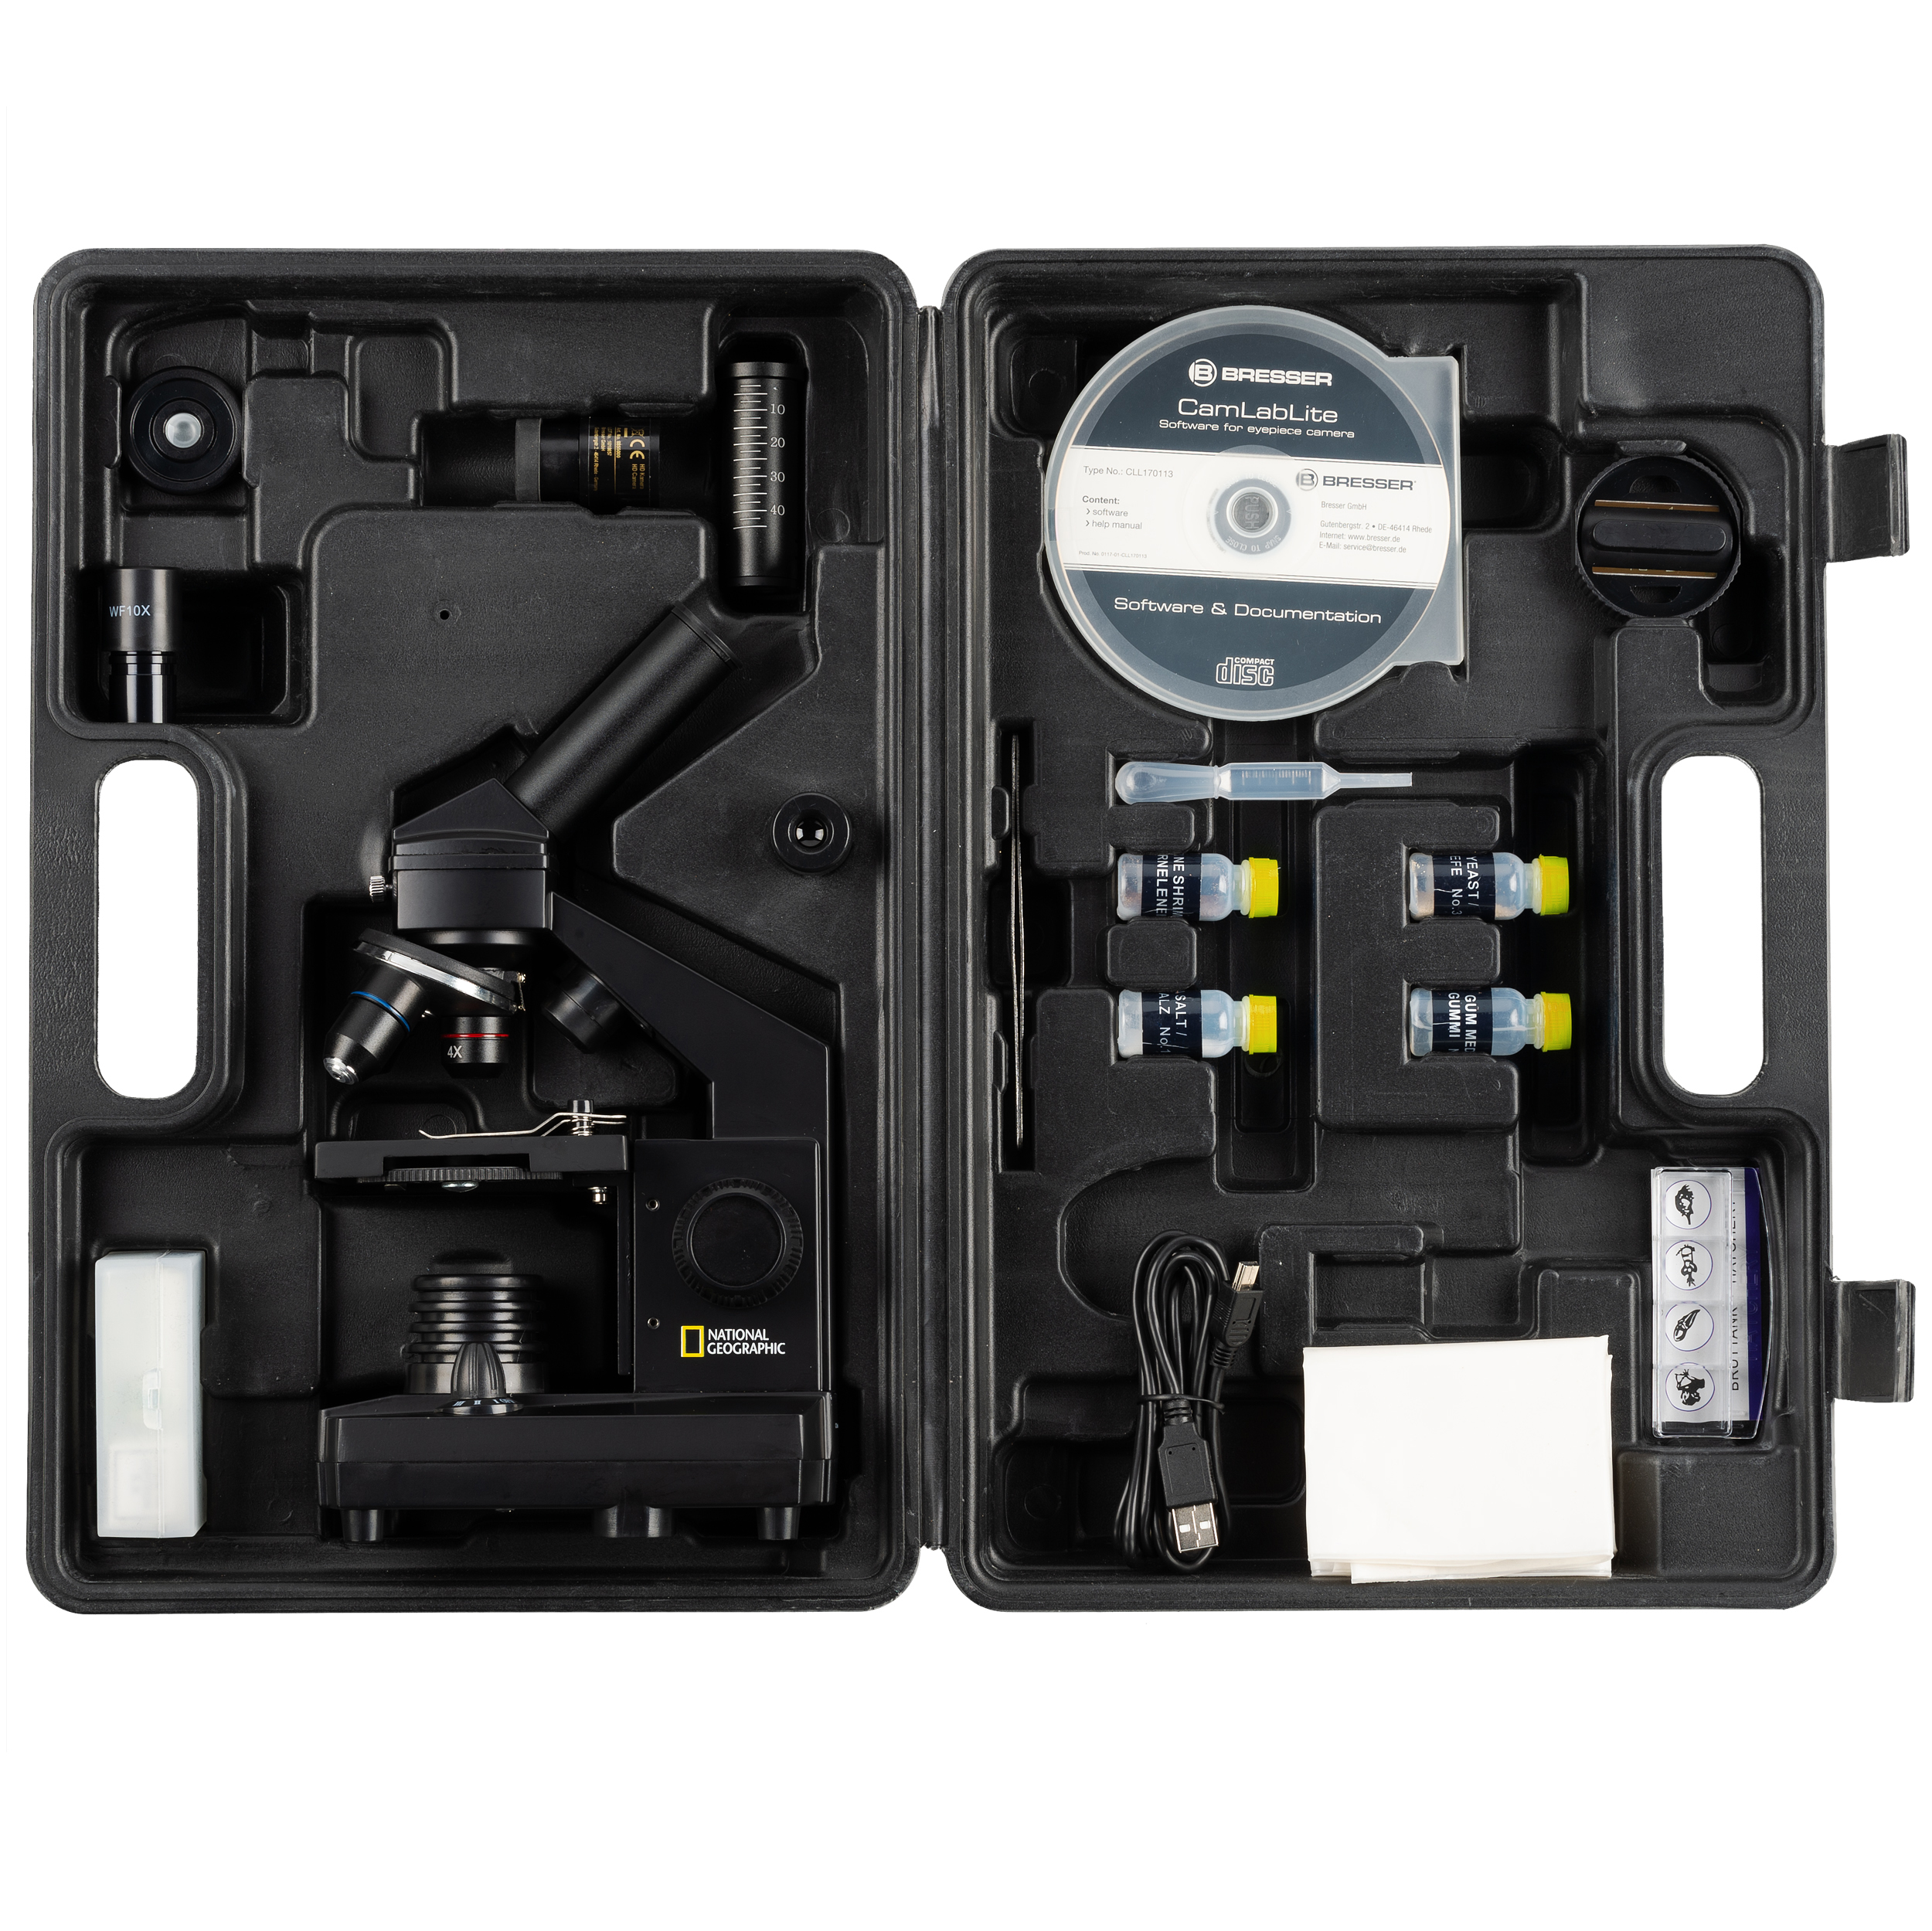 ​NATIONAL GEOGRAPHIC 40x-1024x Microscopio (maleta y ocular USB incluidos)